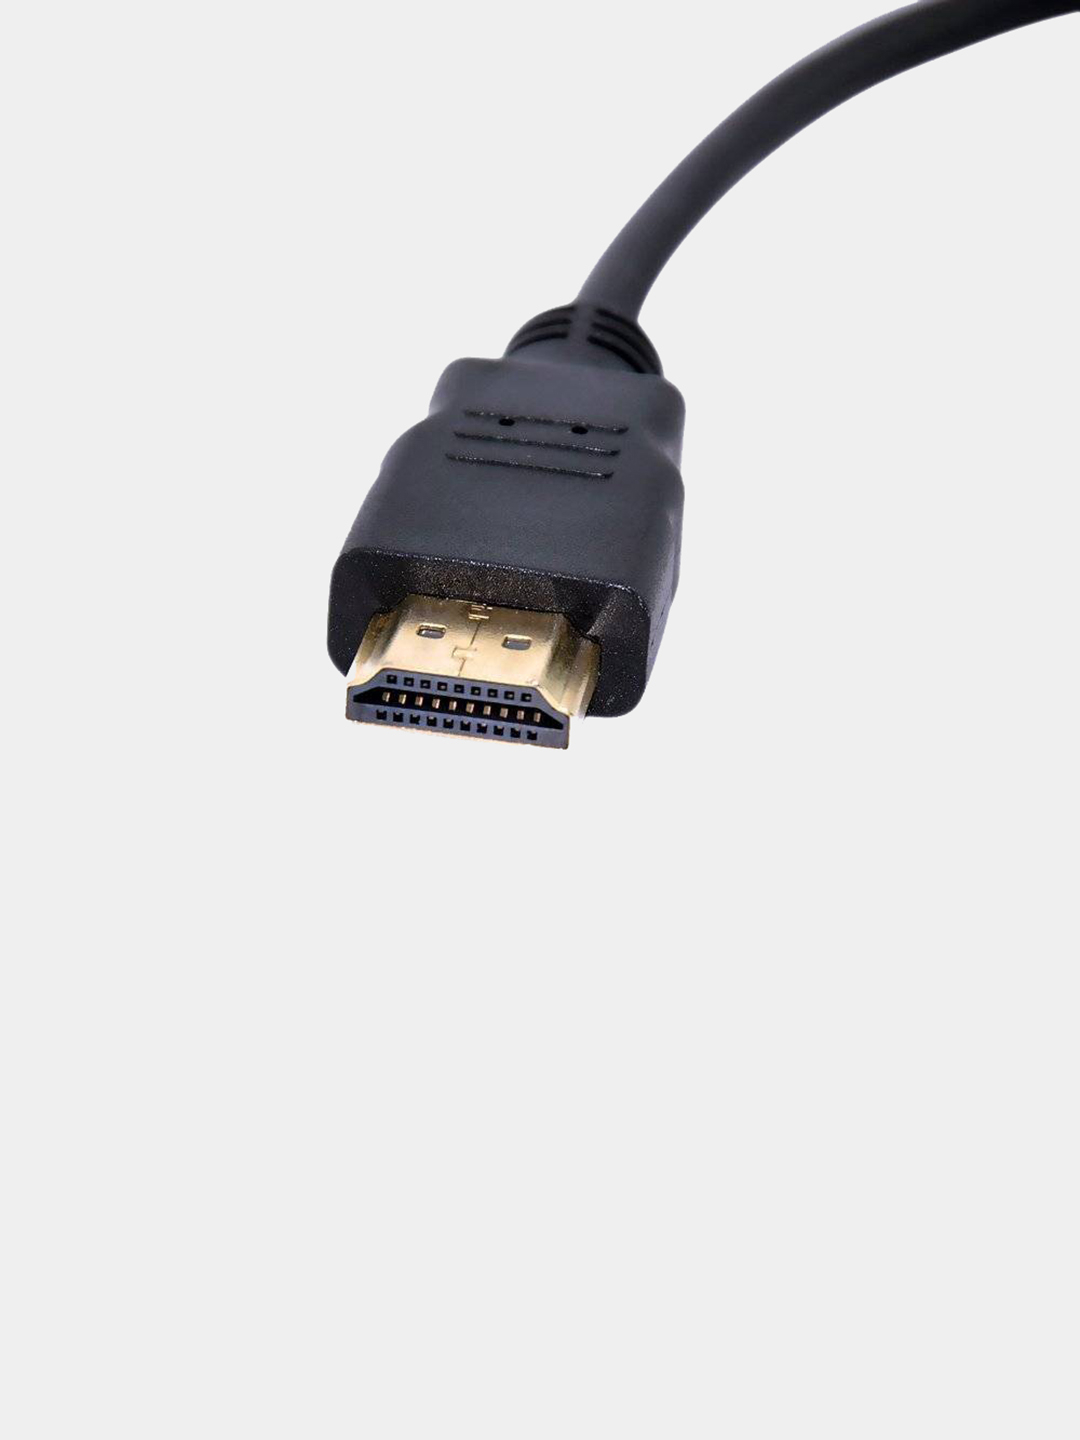 Переходник для hdmi кабеля. Коннектор VGA В HDMI переходник. Кабель VGA на HDMI 15 М. Адаптер-переходник DGMEDIA at1013 HDMI - VGA, 0.1 M, черный. Переходник HDMI - VGA 0,15 М.